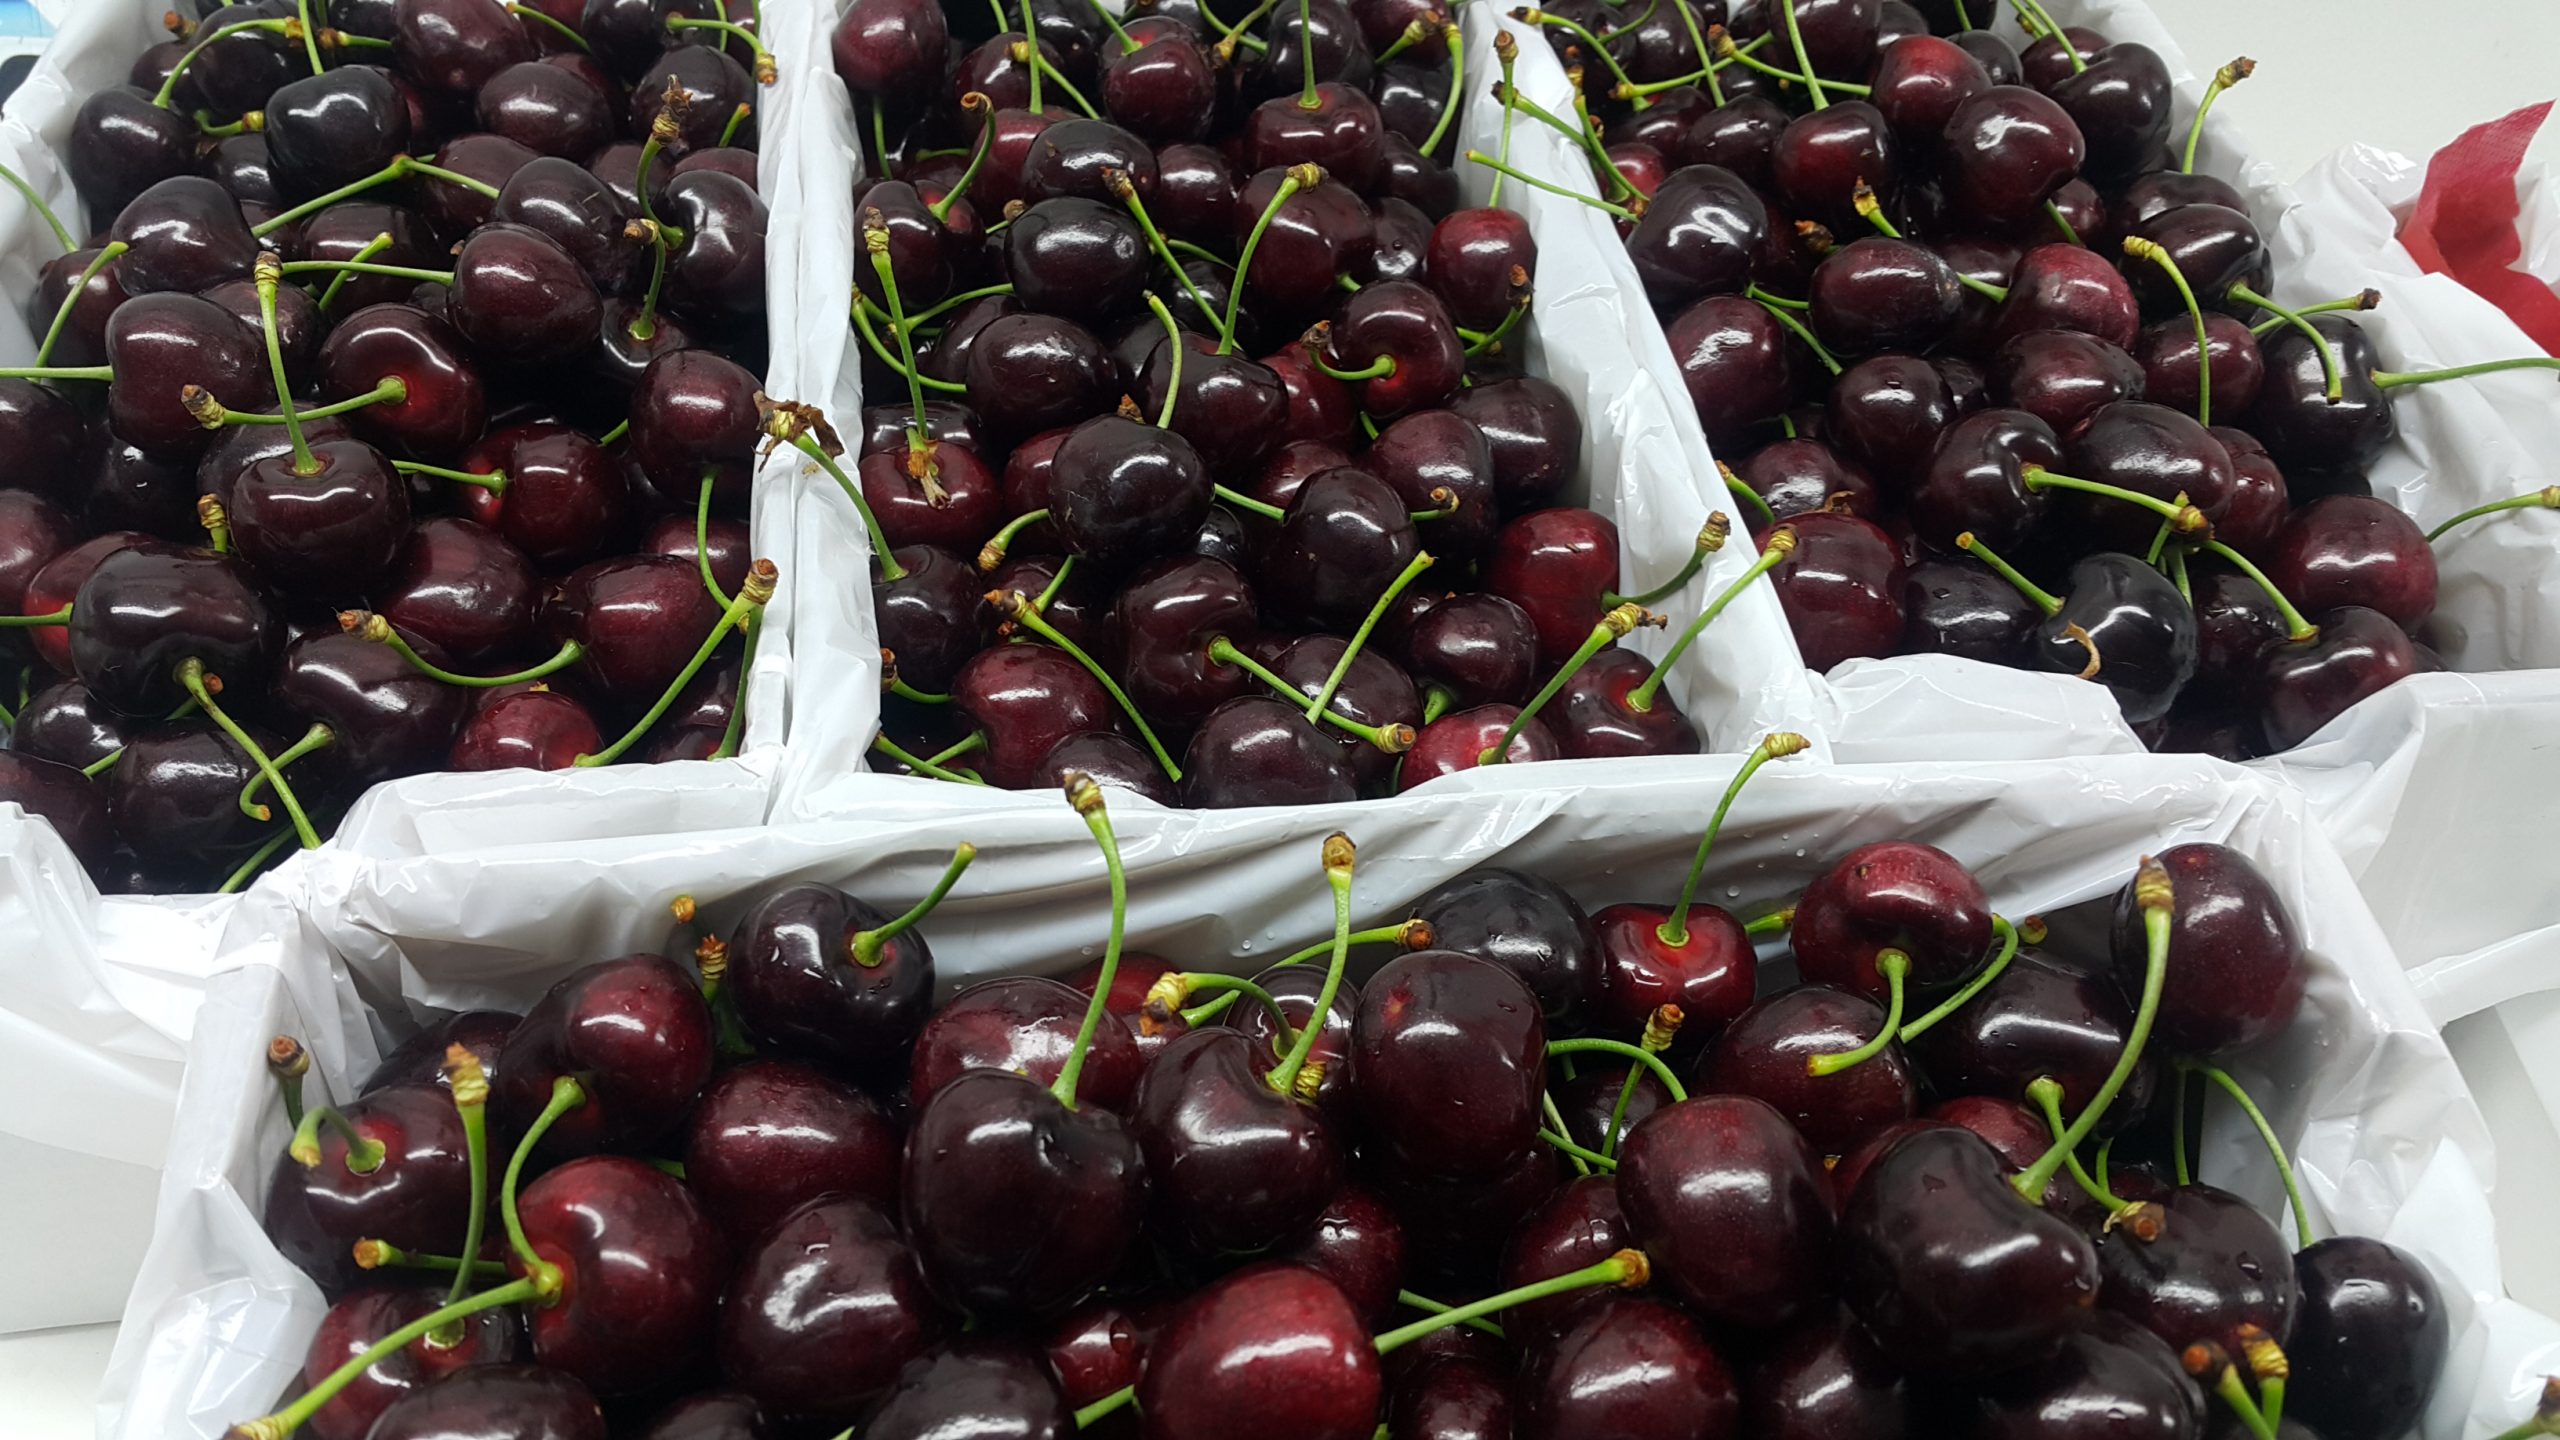 export quality cherries